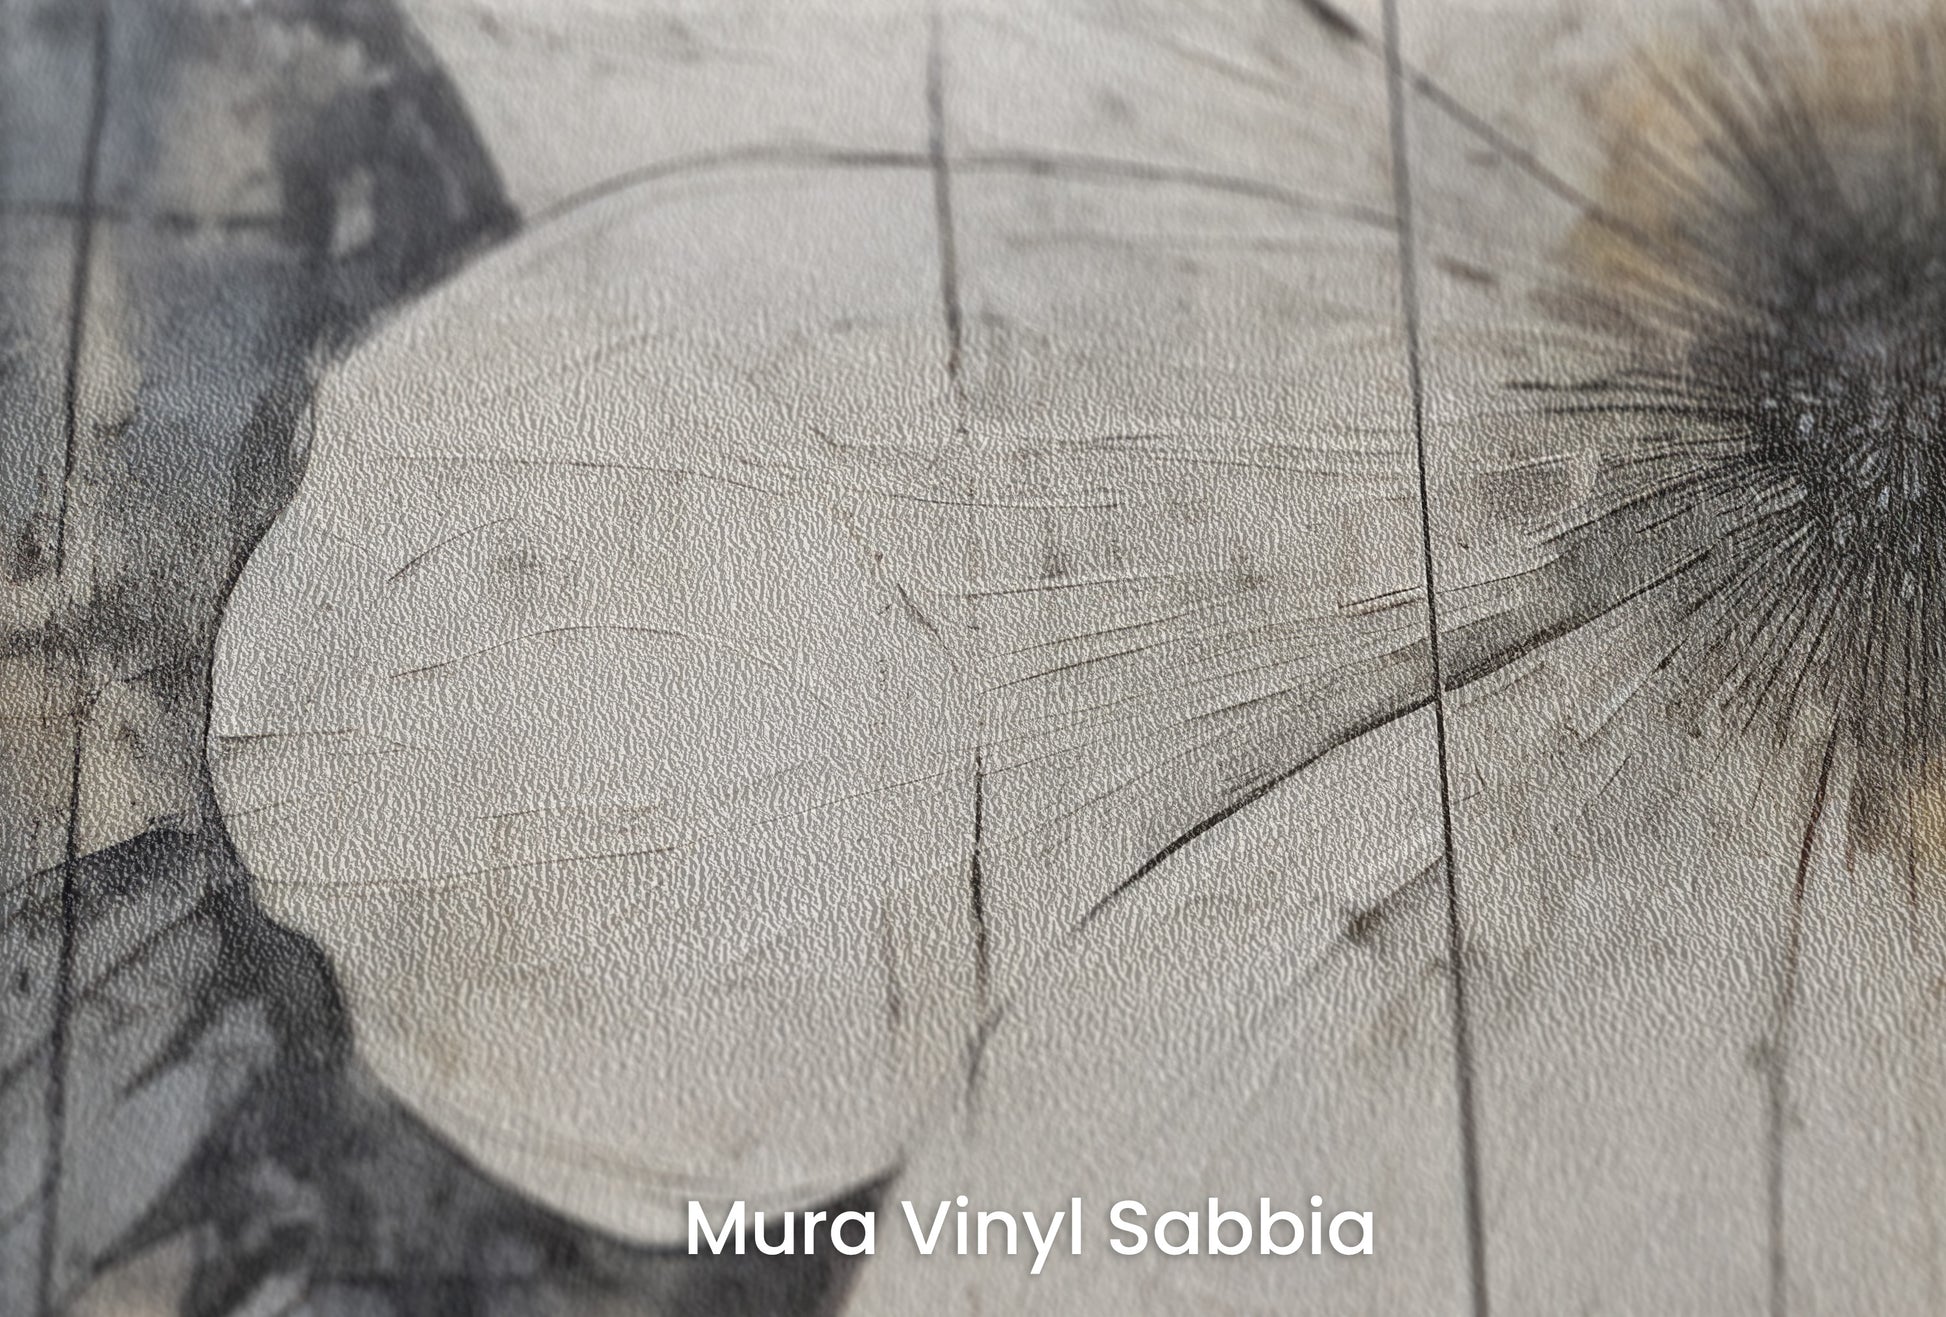 Zbliżenie na artystyczną fototapetę o nazwie INDUSTRIAL BLOOM na podłożu Mura Vinyl Sabbia struktura grubego ziarna piasku.